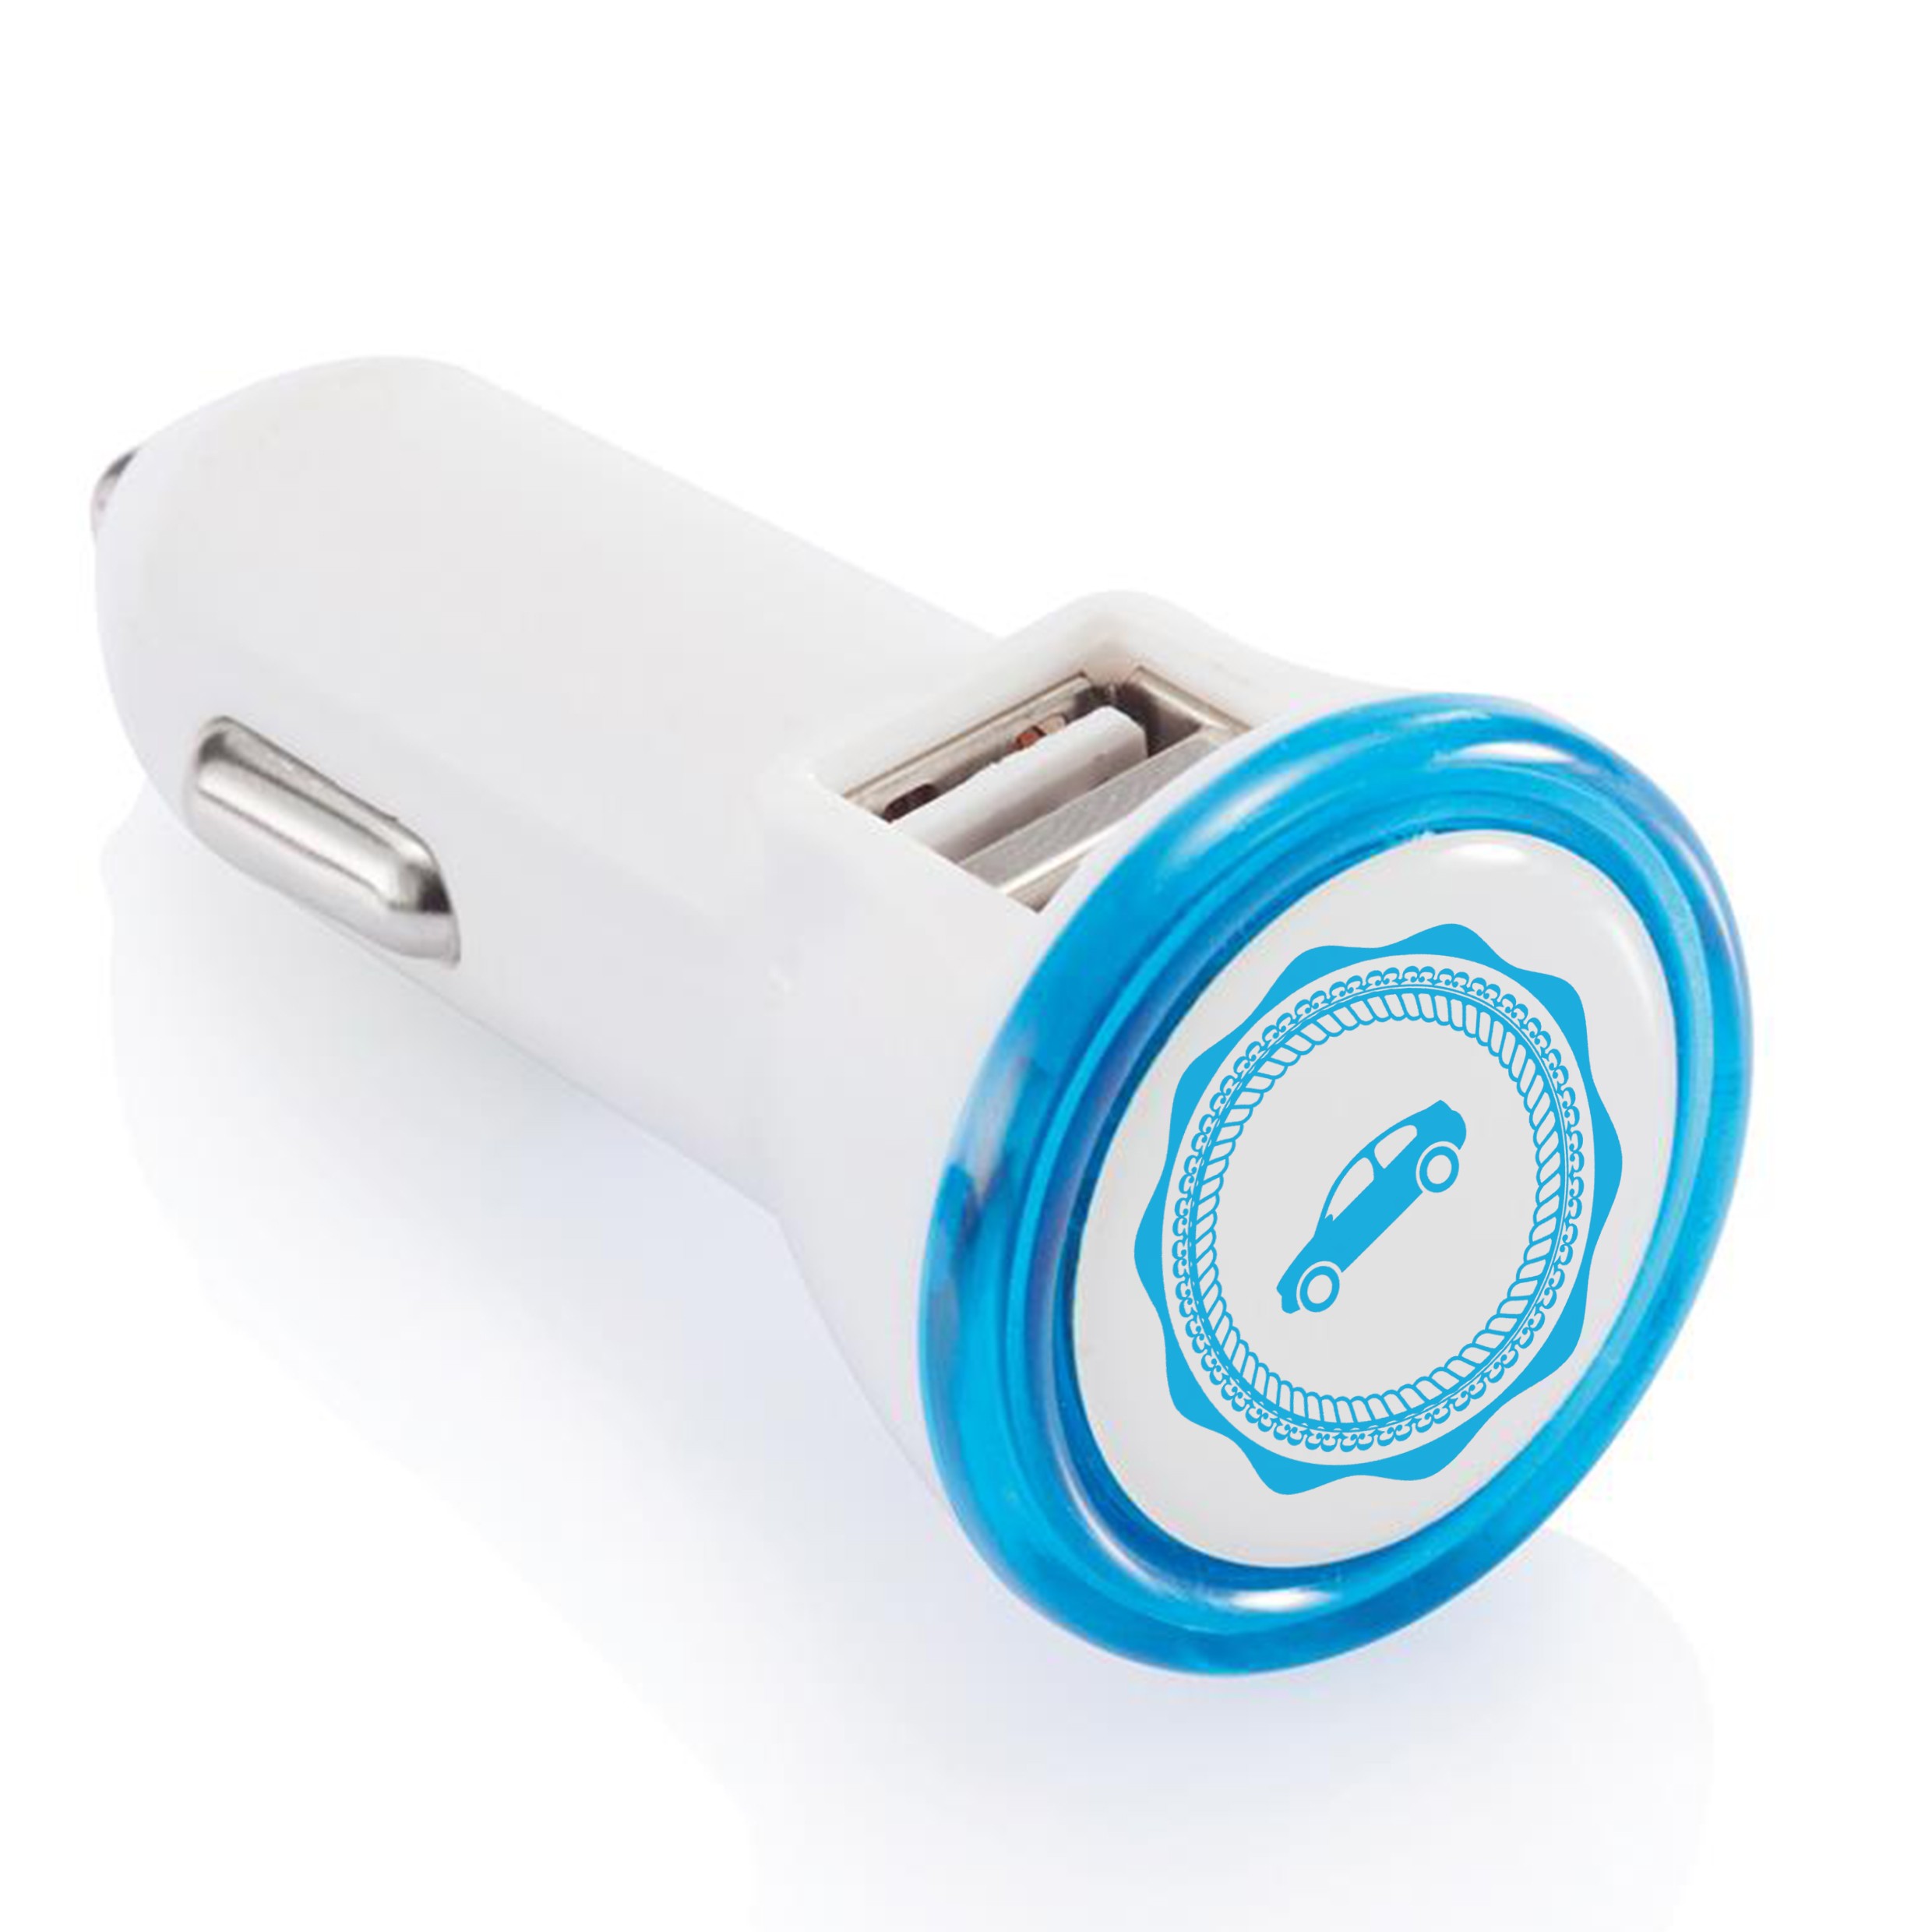 Tragbarer Doppel-USB-Anschluss mit integrierter LED-Leuchte - Hayingen 